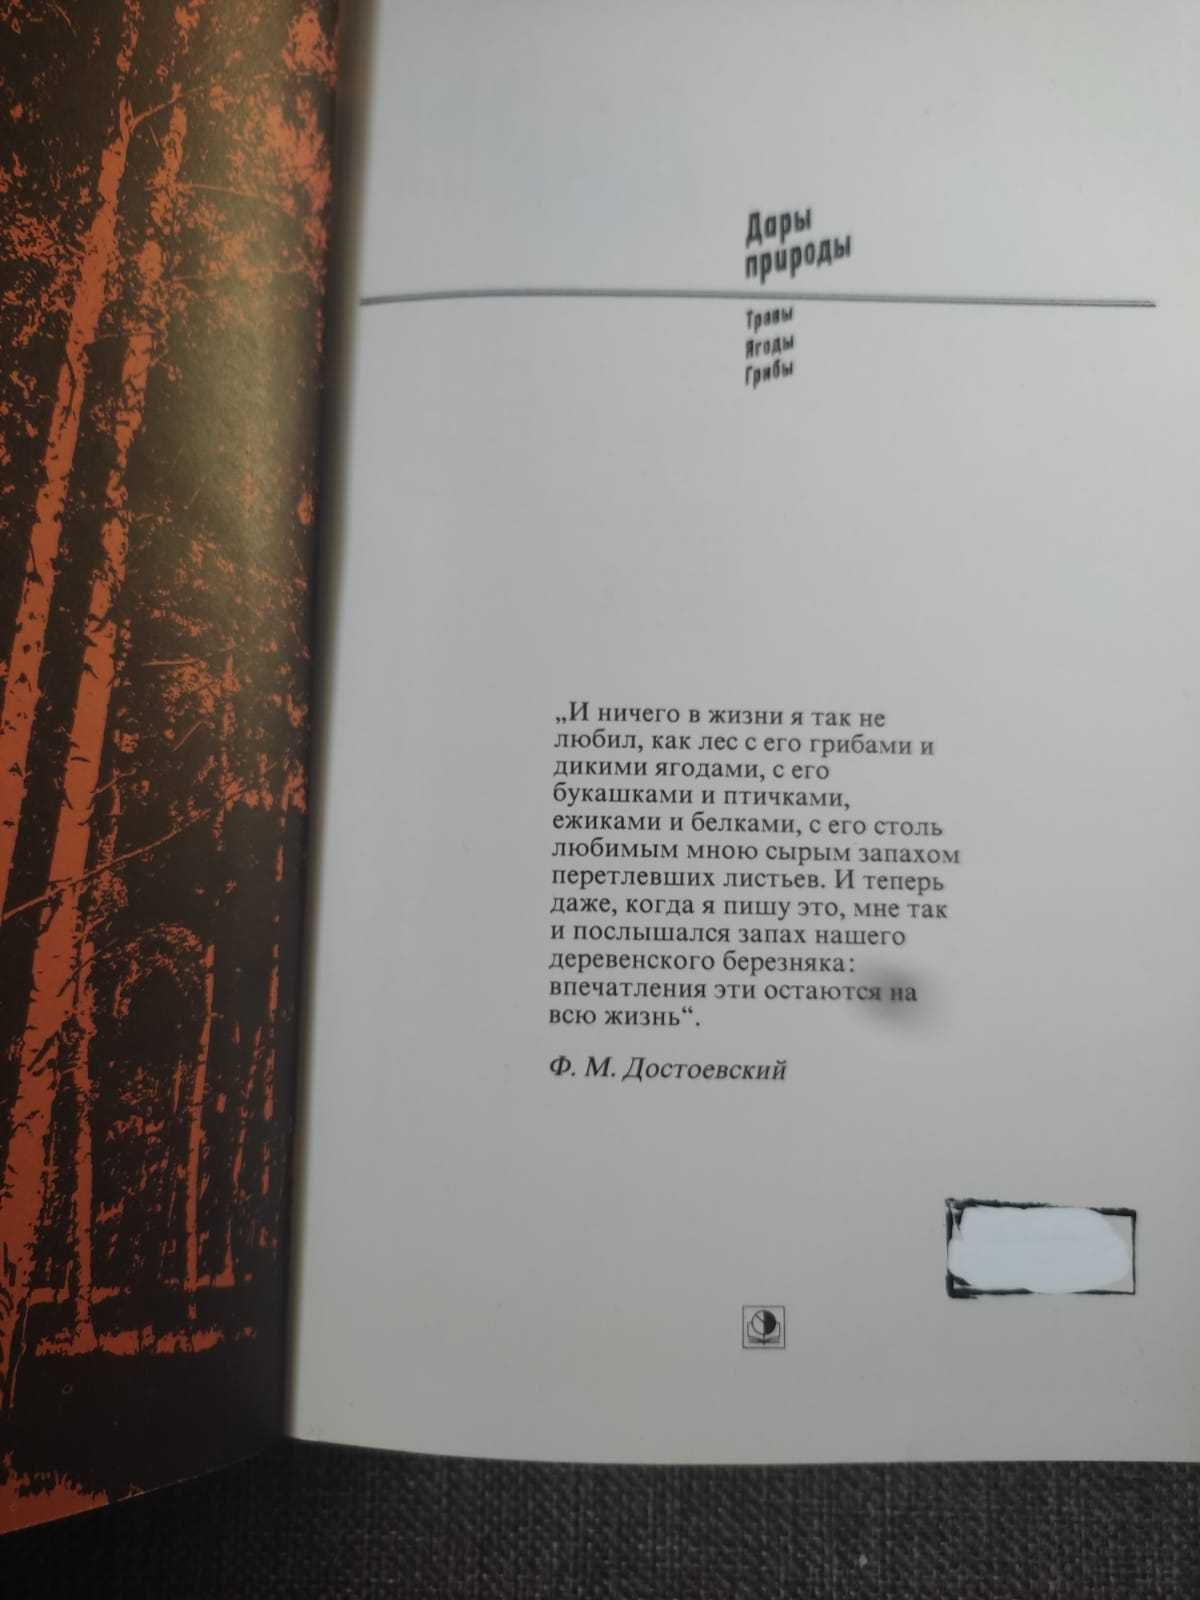 Дары природы Издательство "Экономика", Москва, 1984г.